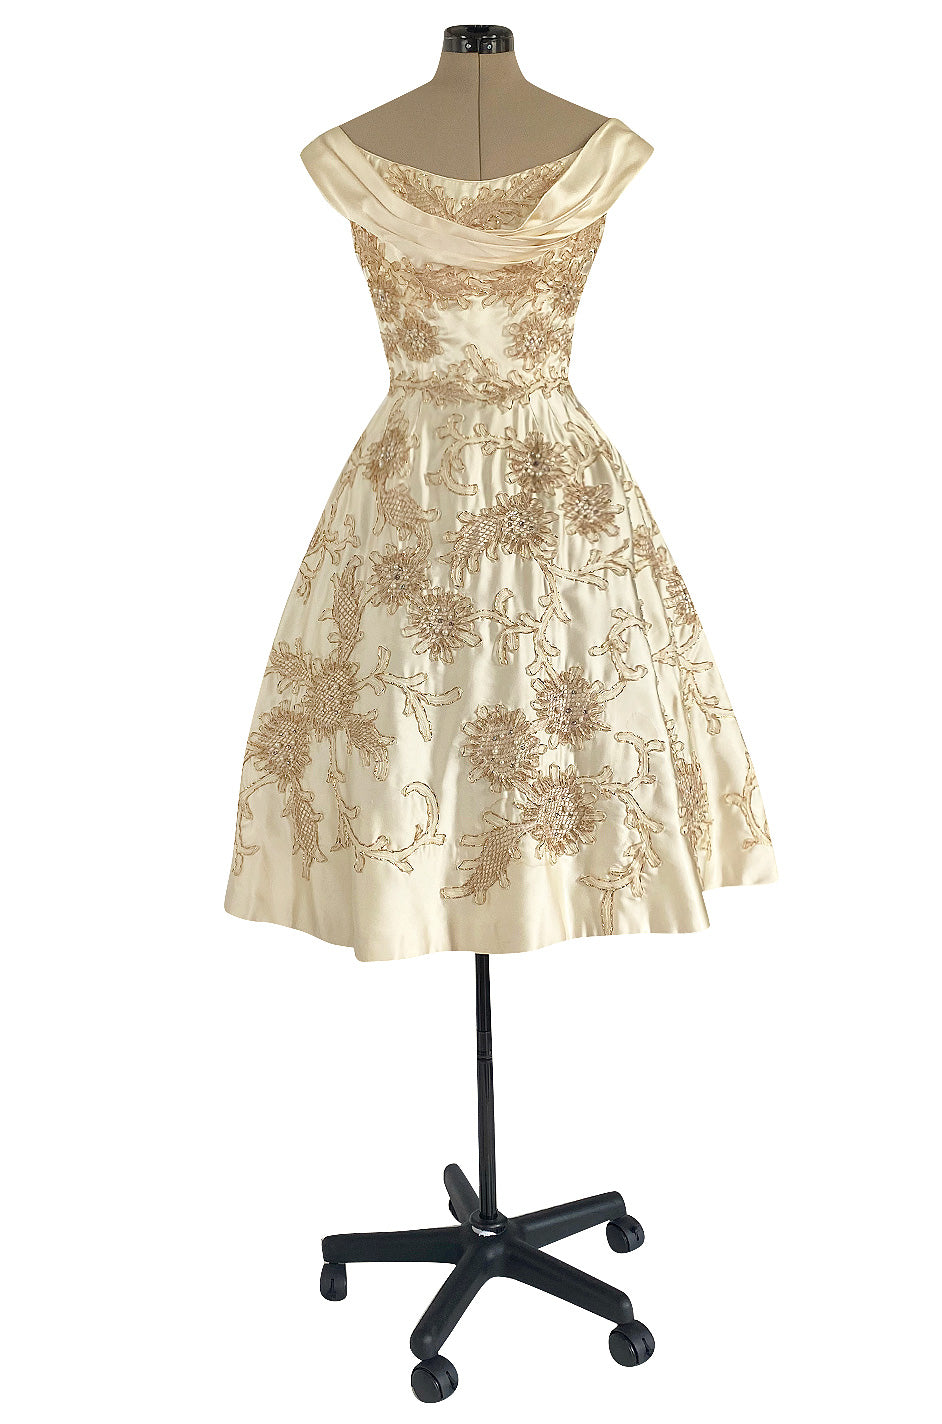 Incredible 1950s Ceil Chapman Ivory Silk Satin Dress w Gold Metal Ribb ...